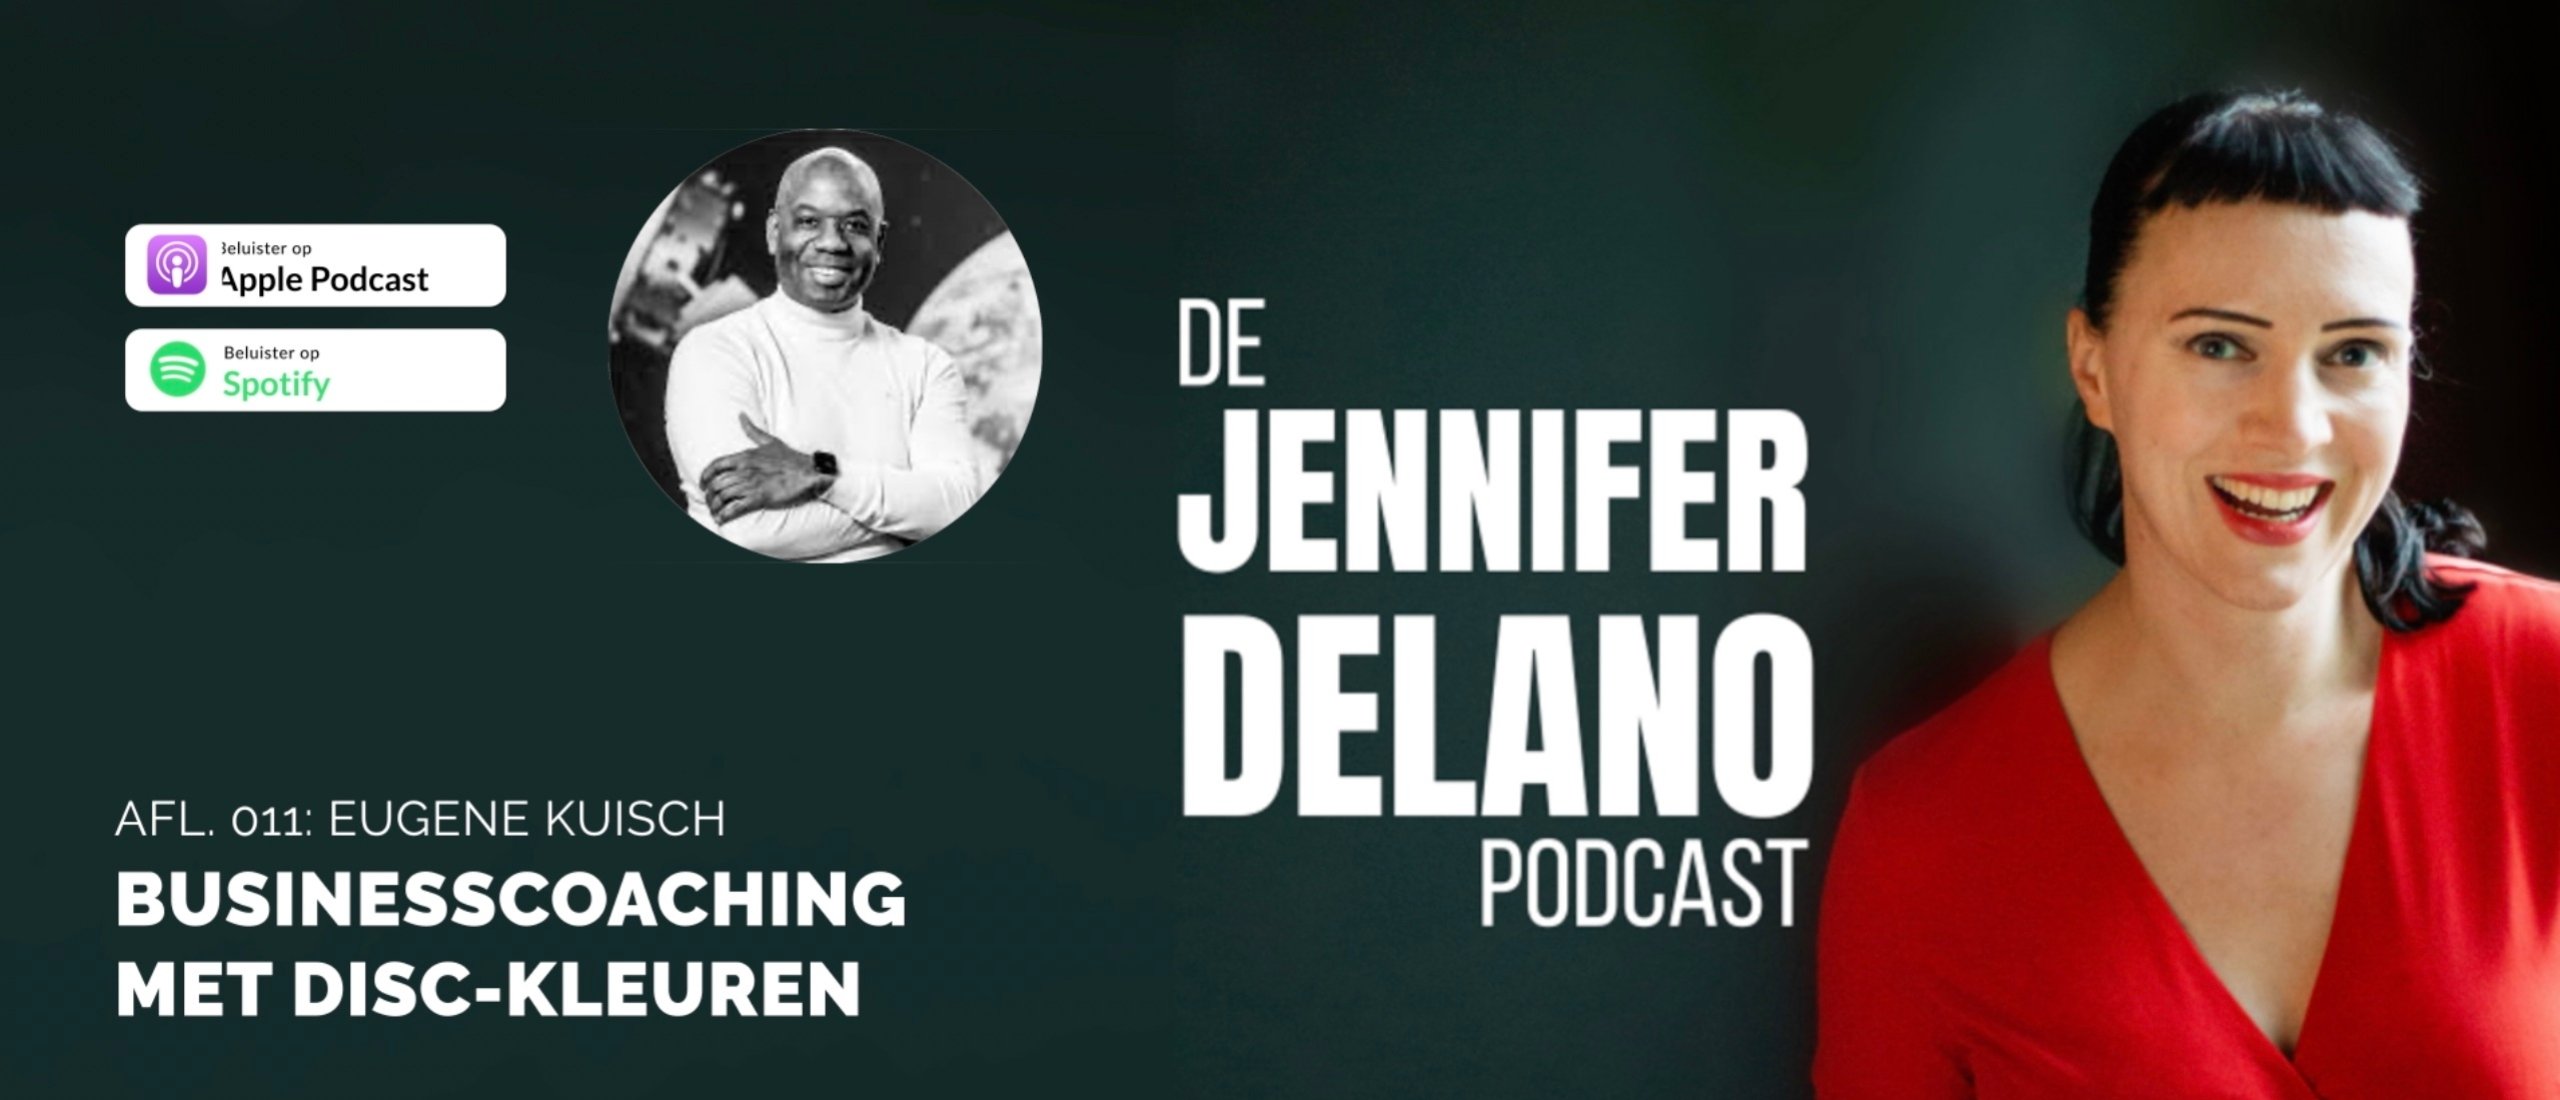 Blauw, geel, rood of groen? Businesscoaching met de DISC-kleuren - De Jennifer Delano Podcast Afl. 011 met Eugène Kuisch